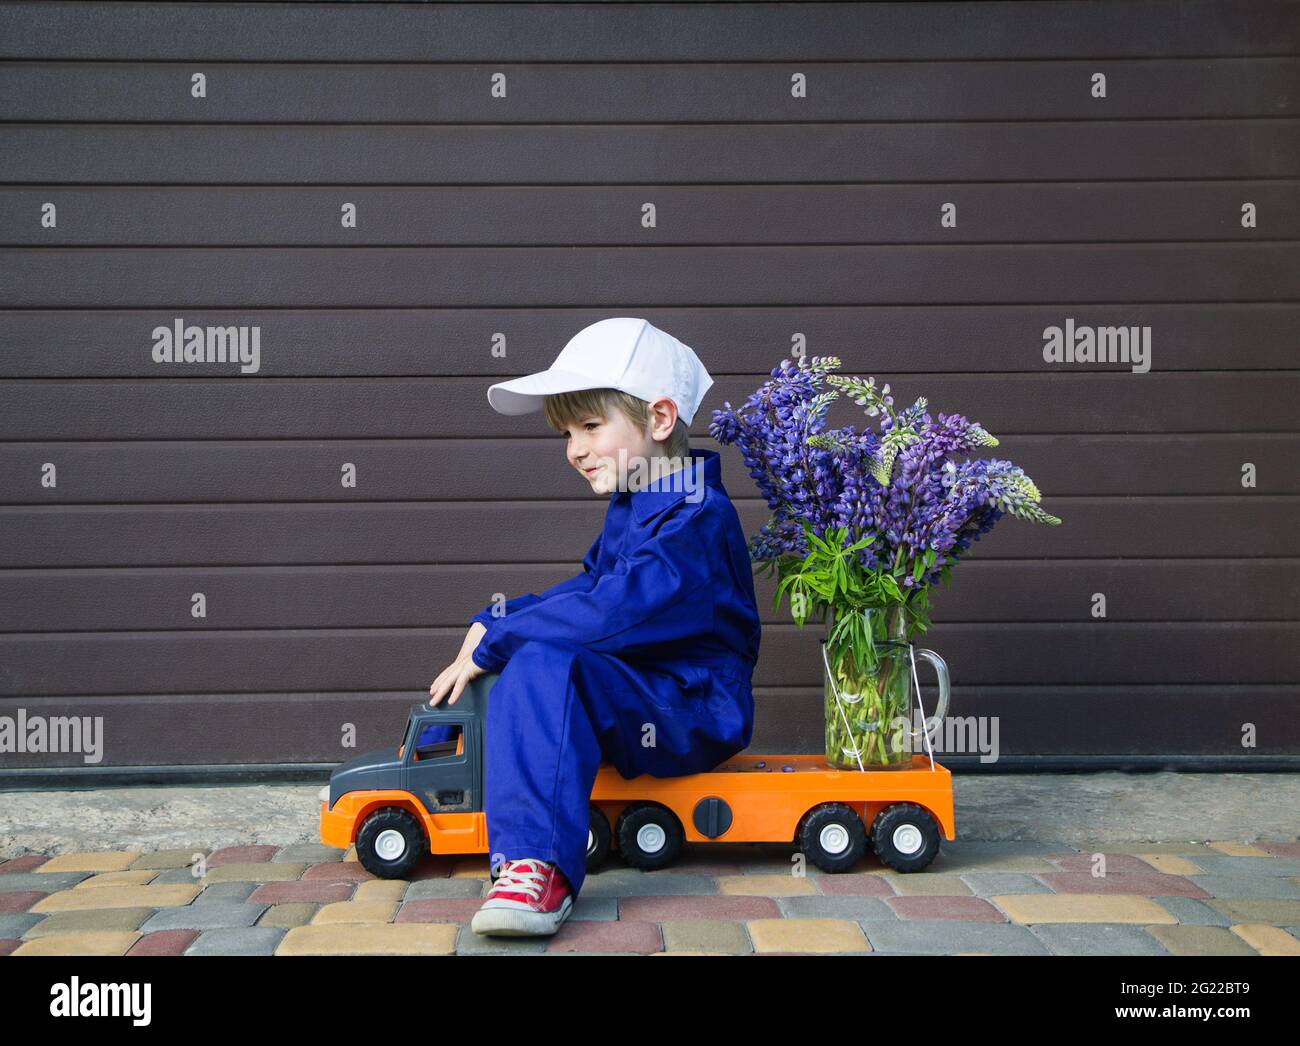 drôle mignon garçon de 4-5 ans dans une combinaison bleue mécanique et une  casquette est assis dans le profil d'un camion de jouet avec un grand  bouquet de fleurs. Concept de livraison,